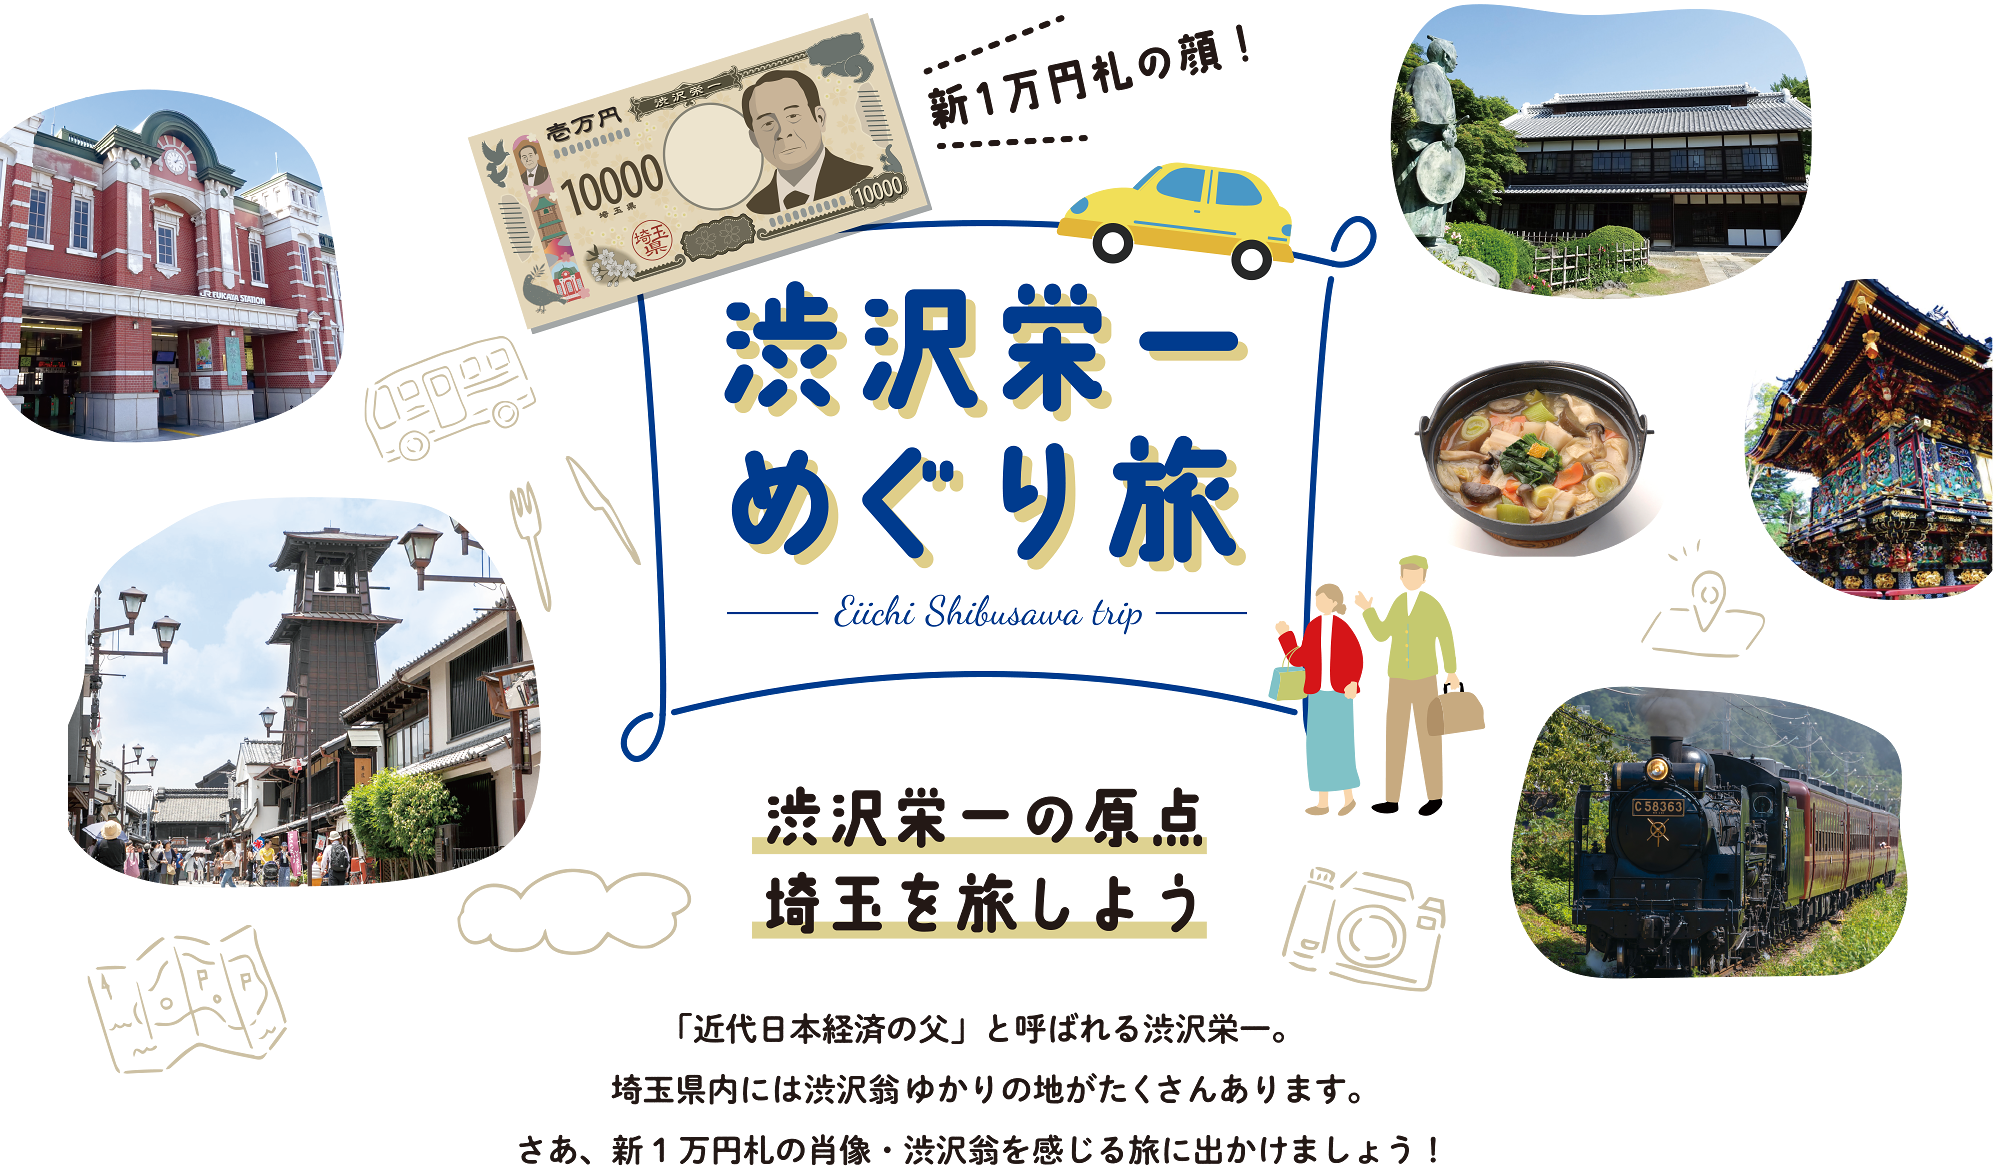 新1万円札の顔！渋沢栄一めぐり旅 -Eiichi Shibusawa trip-　渋沢栄一の原点　埼玉を旅しよう「近代日本経済の父」と呼ばれる渋沢栄一。埼玉県内には渋沢翁ゆかりの地がたくさんあります。さあ、新1万円札の肖像・渋沢翁を感じる旅に出かけましょう！